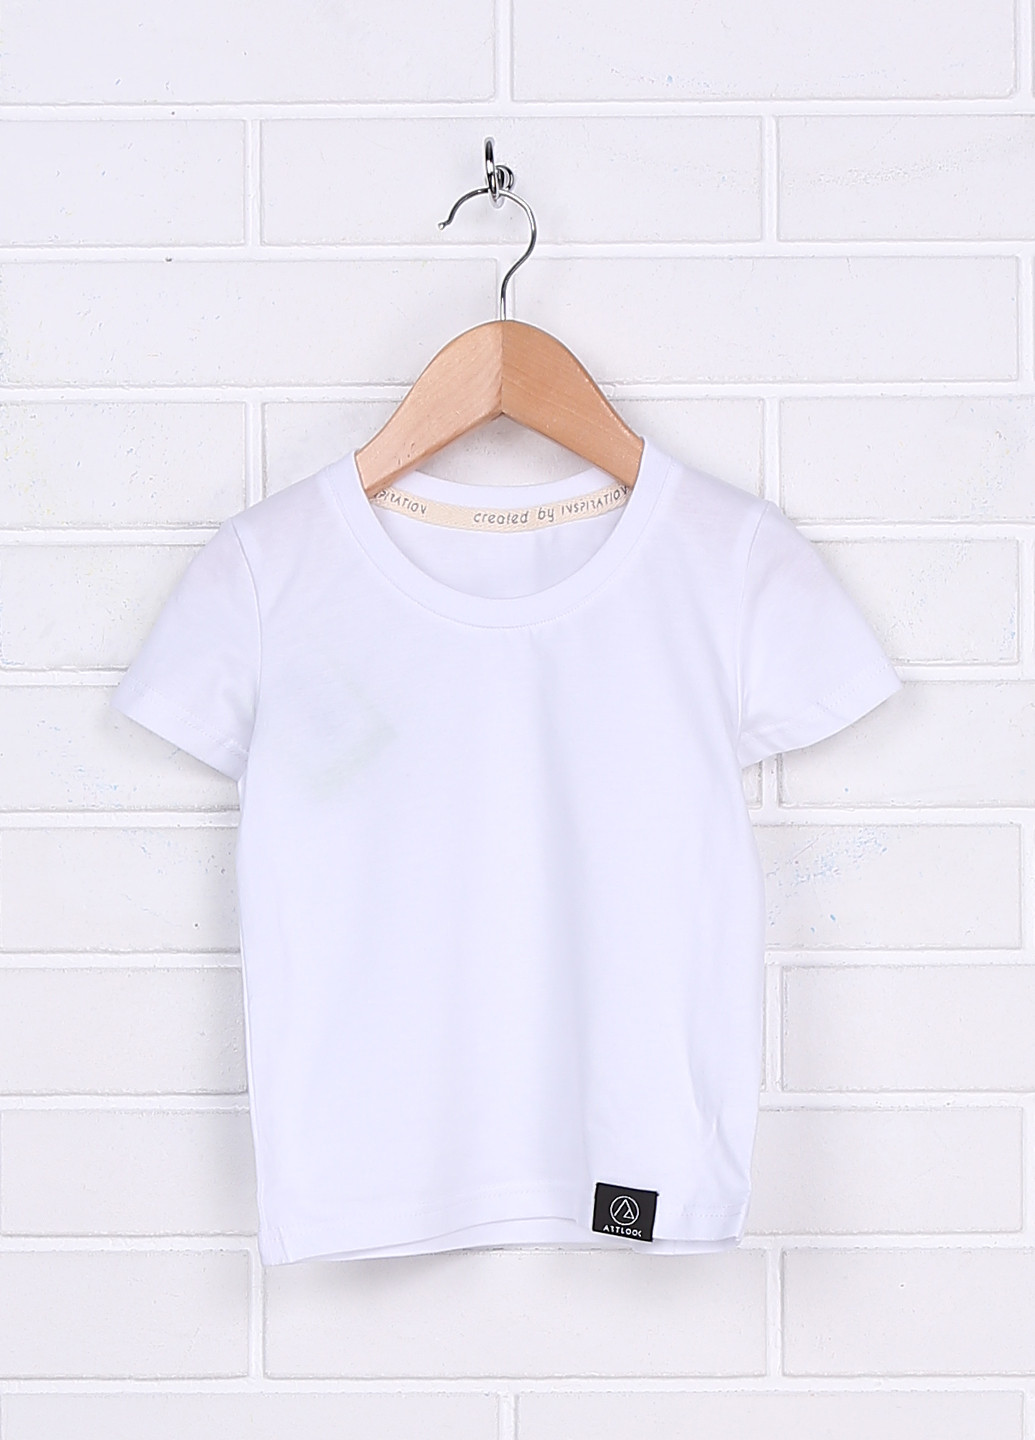 Белая летняя футболка с коротким рукавом ArtLook